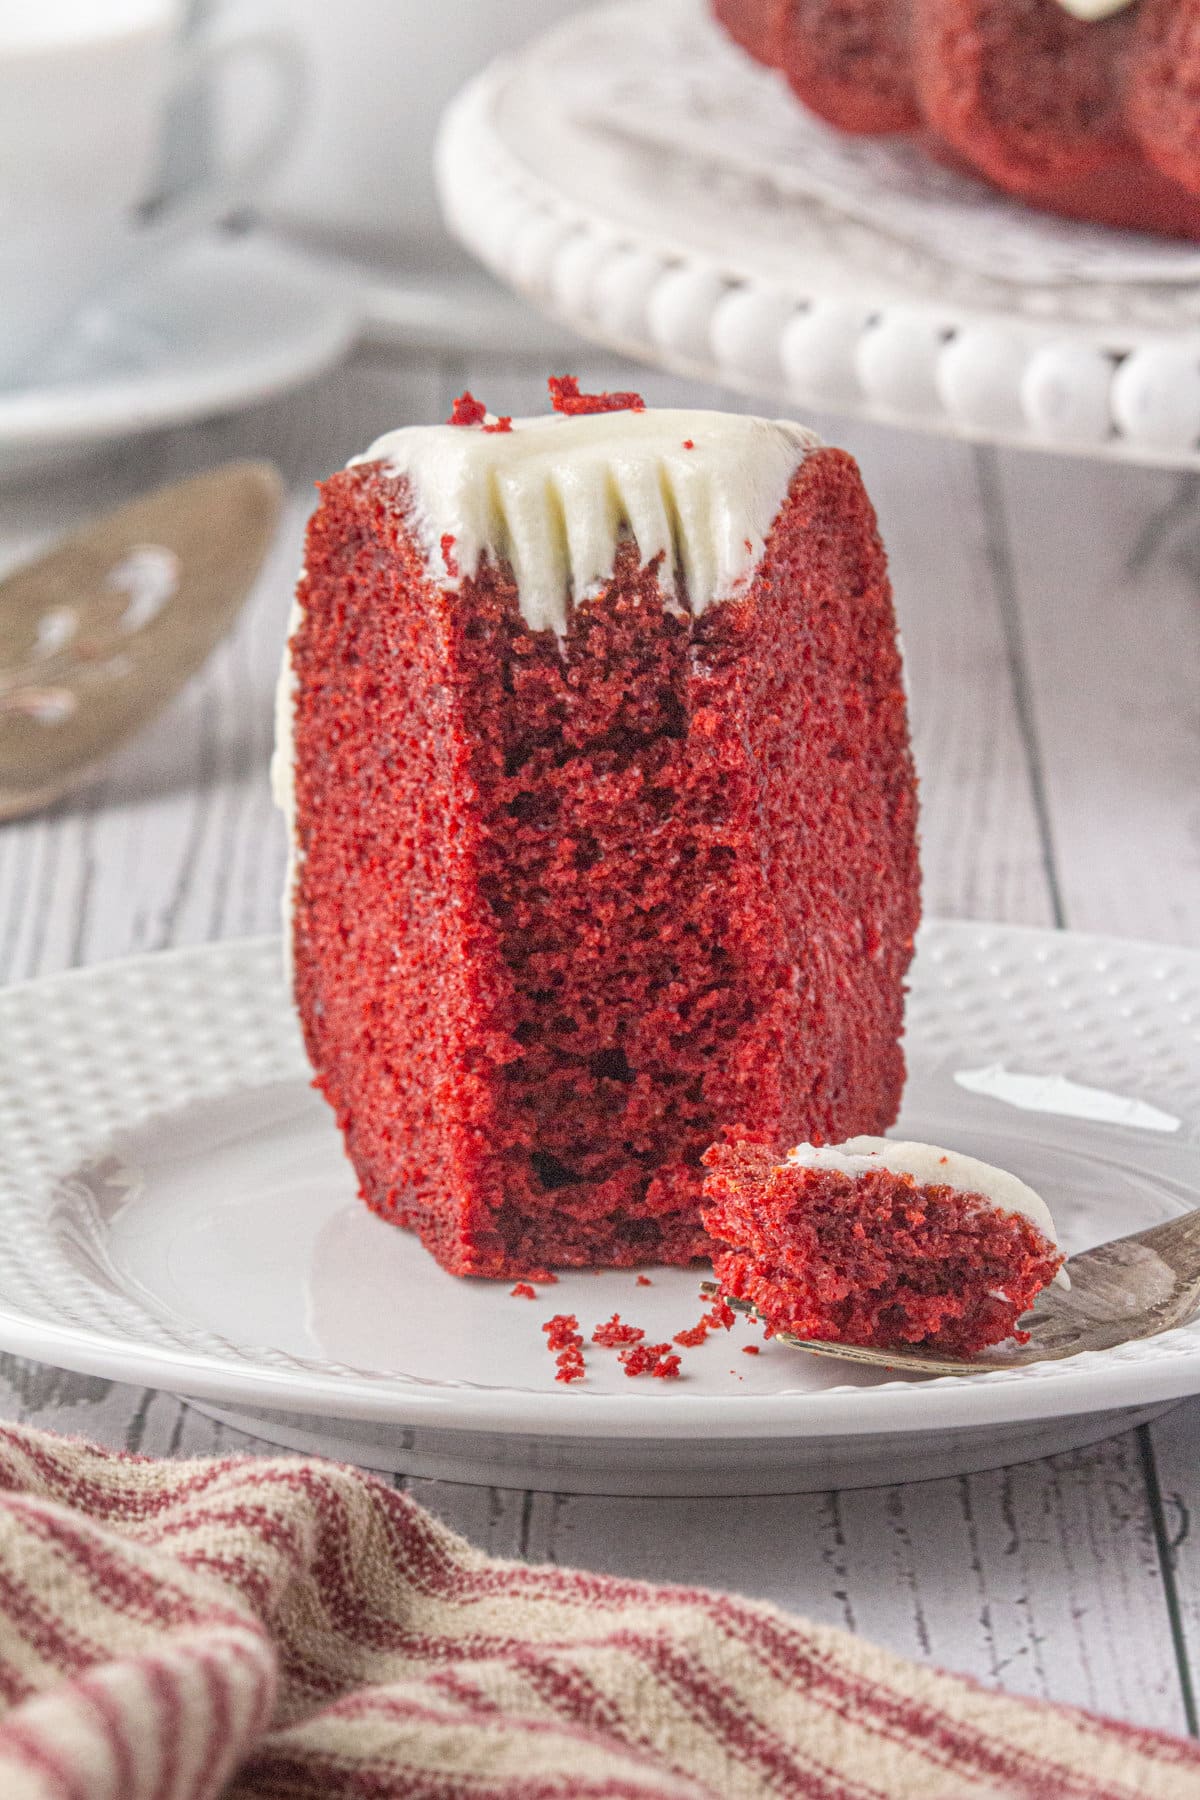 A slice of red velvet bundt cake on a white plate.